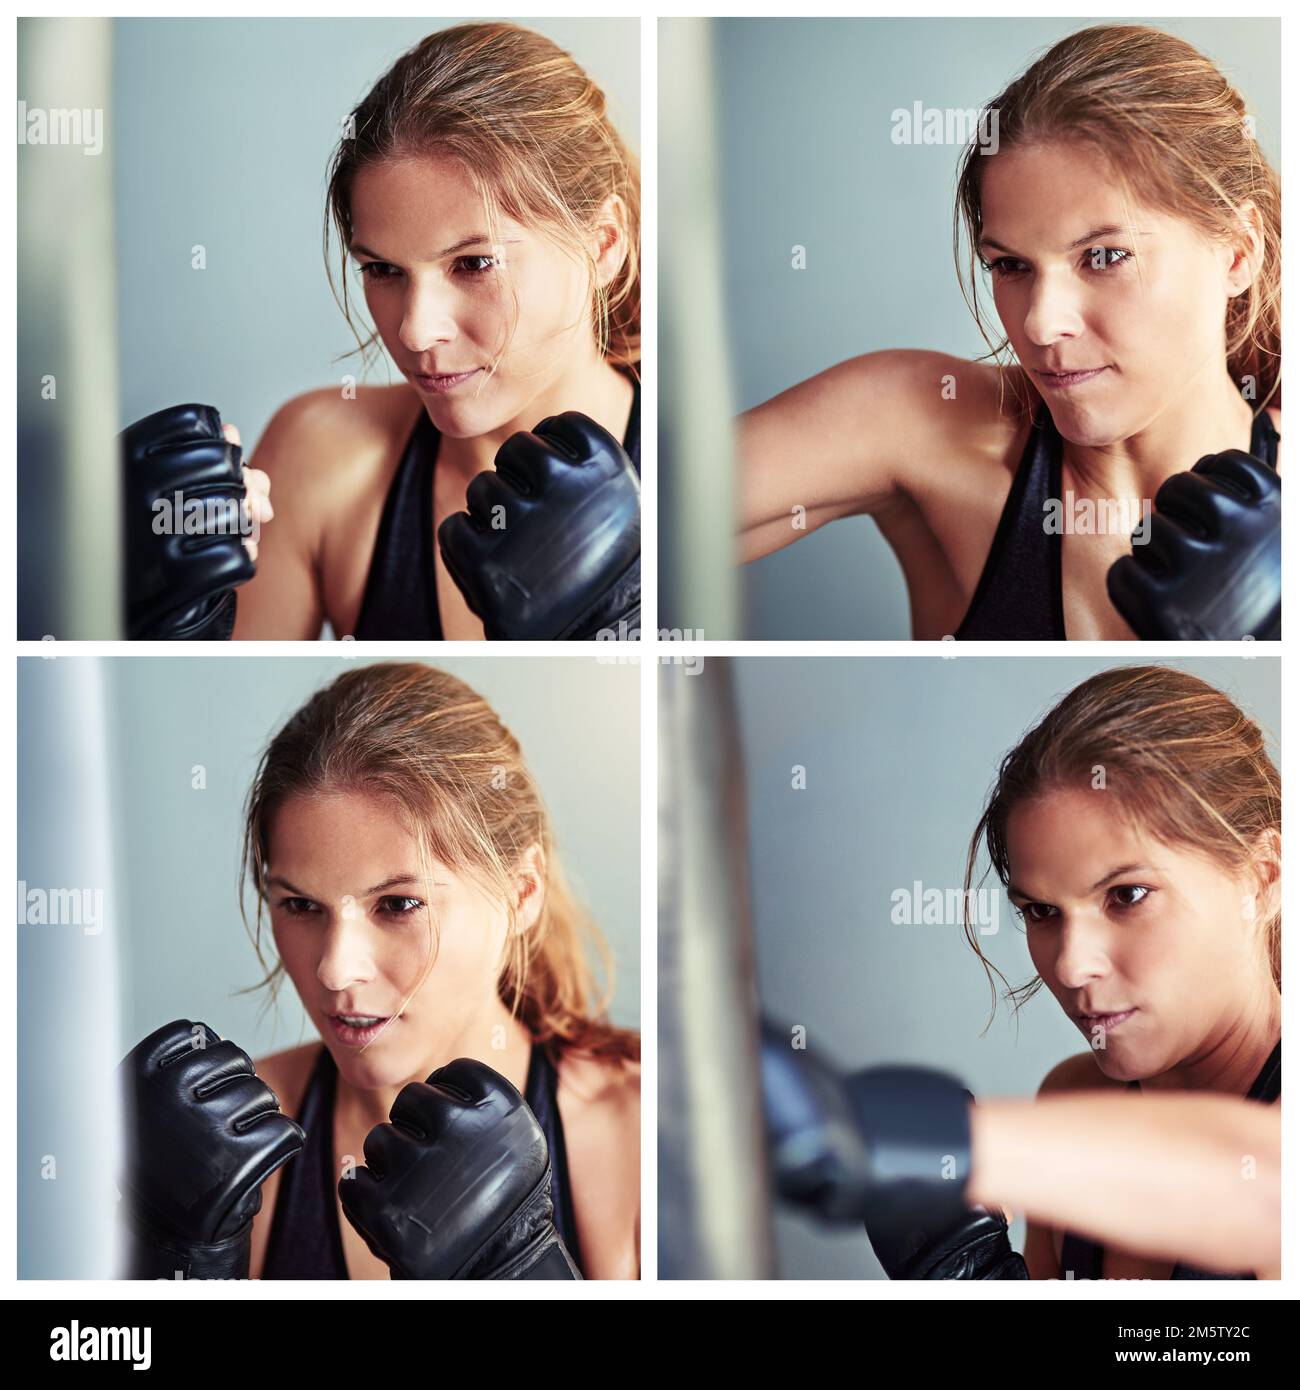 Fließende Schläge. Composite-Bild einer Boxerfrau, die mit einem Boxsack trainiert. Stockfoto